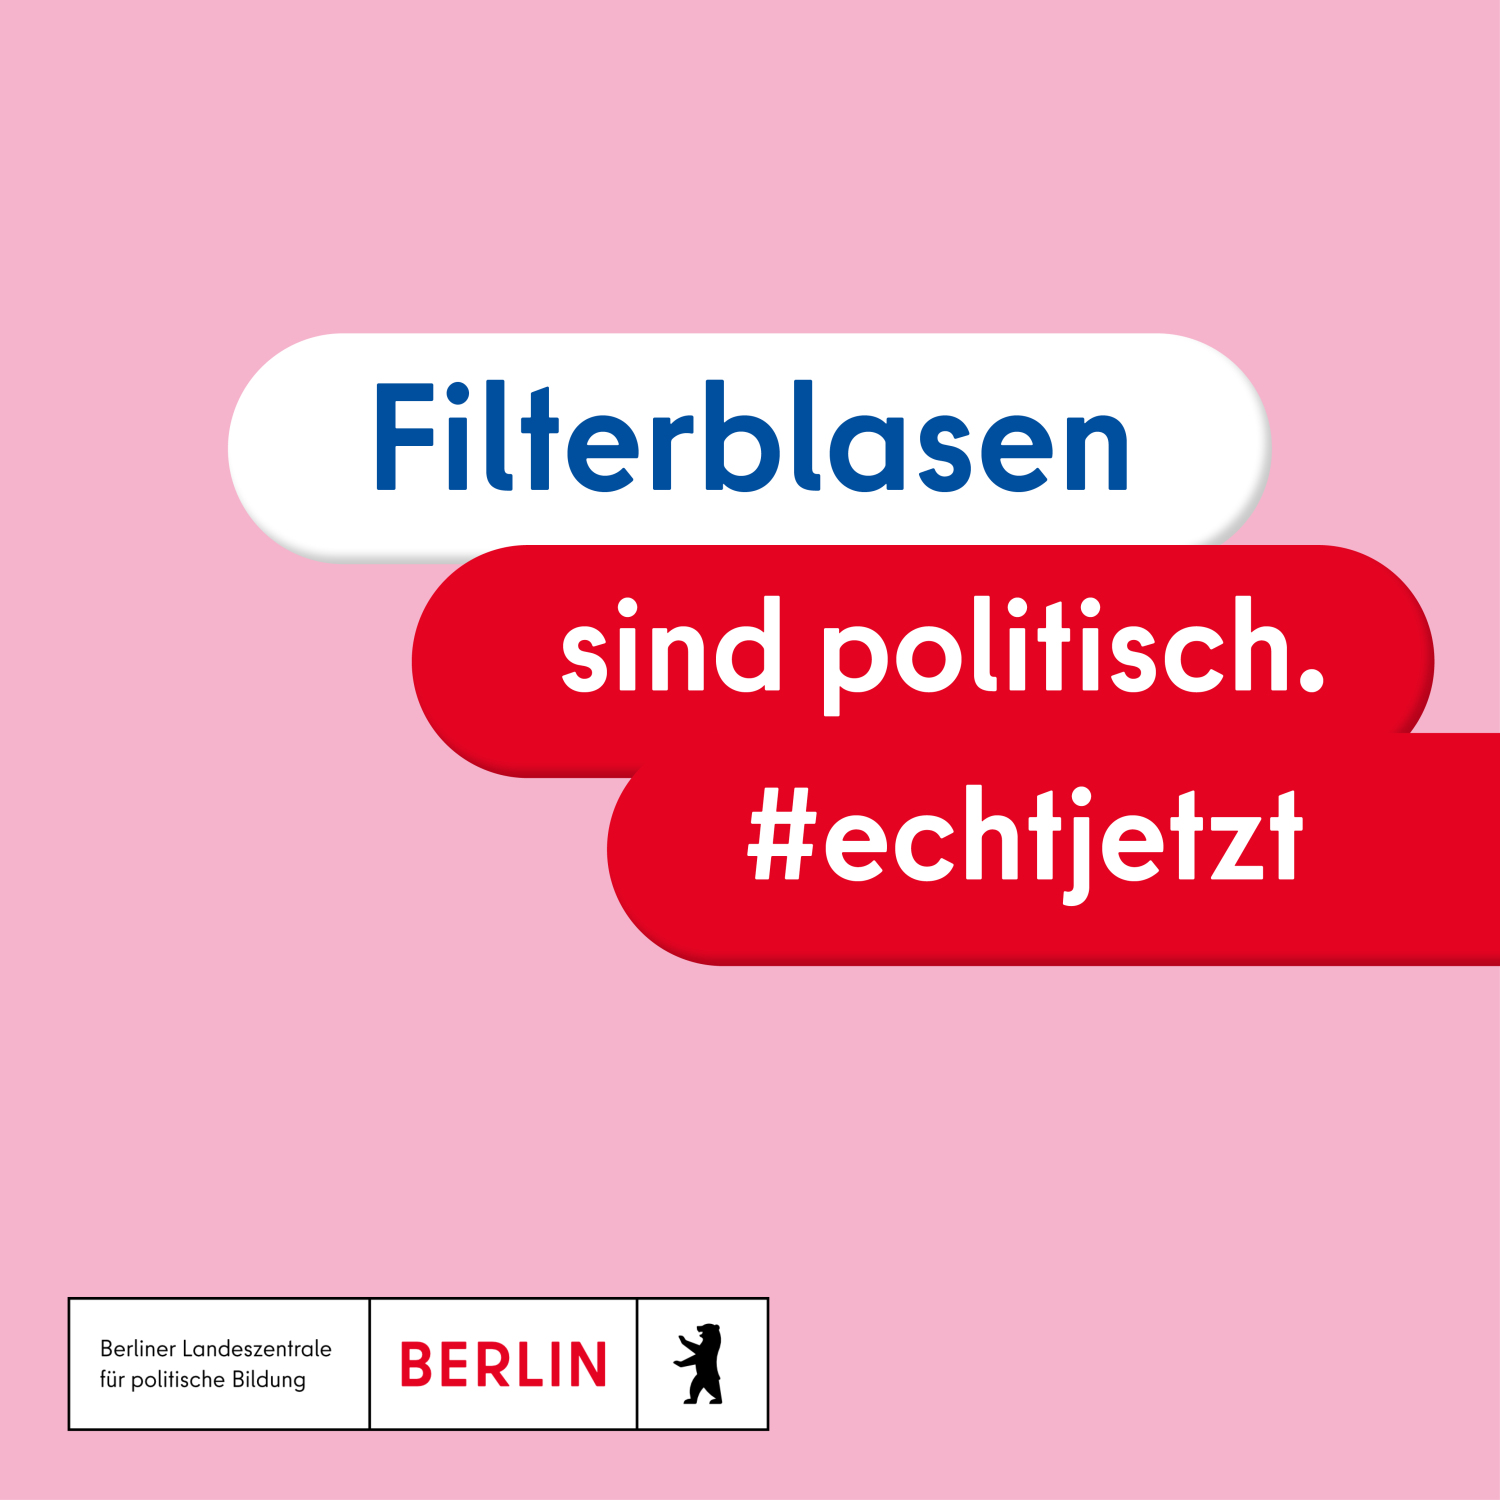 Text: "Filterblasen sind politisch. #echtjetzt"